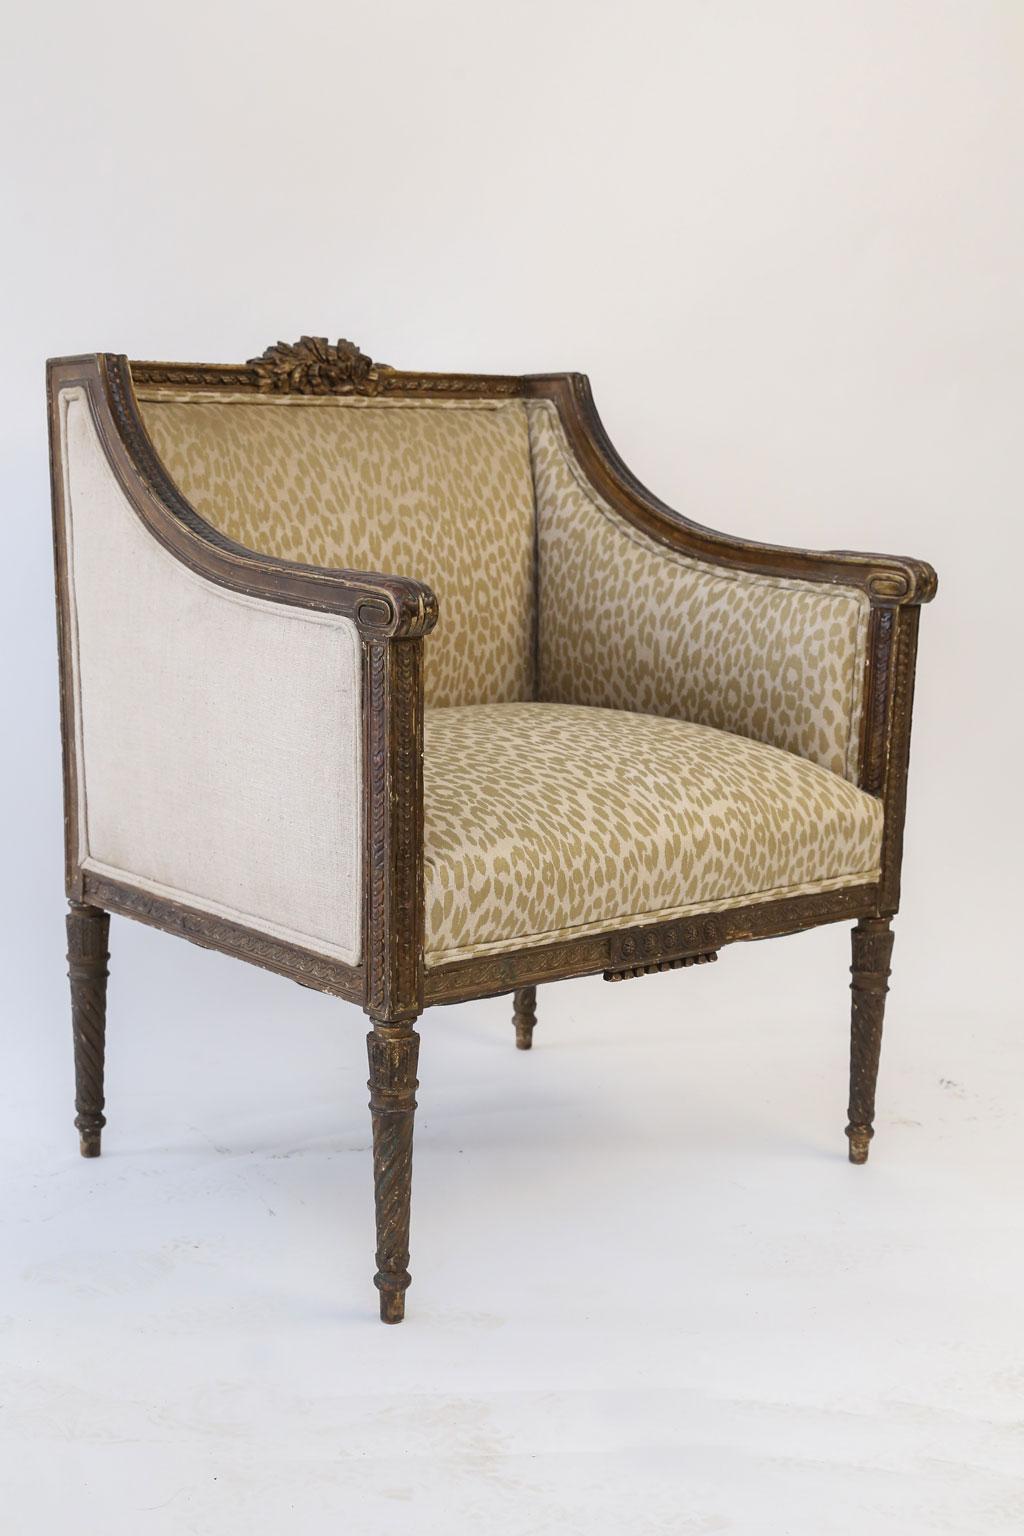 Handgeschnitzter Louis-XVI-Bergère-Sessel aus Frankreich, gepolstert mit Vintage-Stoff. Dieser französische Sessel aus dem 18. Jahrhundert ist handgeschnitzt in Obstholz (wahrscheinlich Nussbaum) um 1775-1795 mit Resten von nachgedunkelter